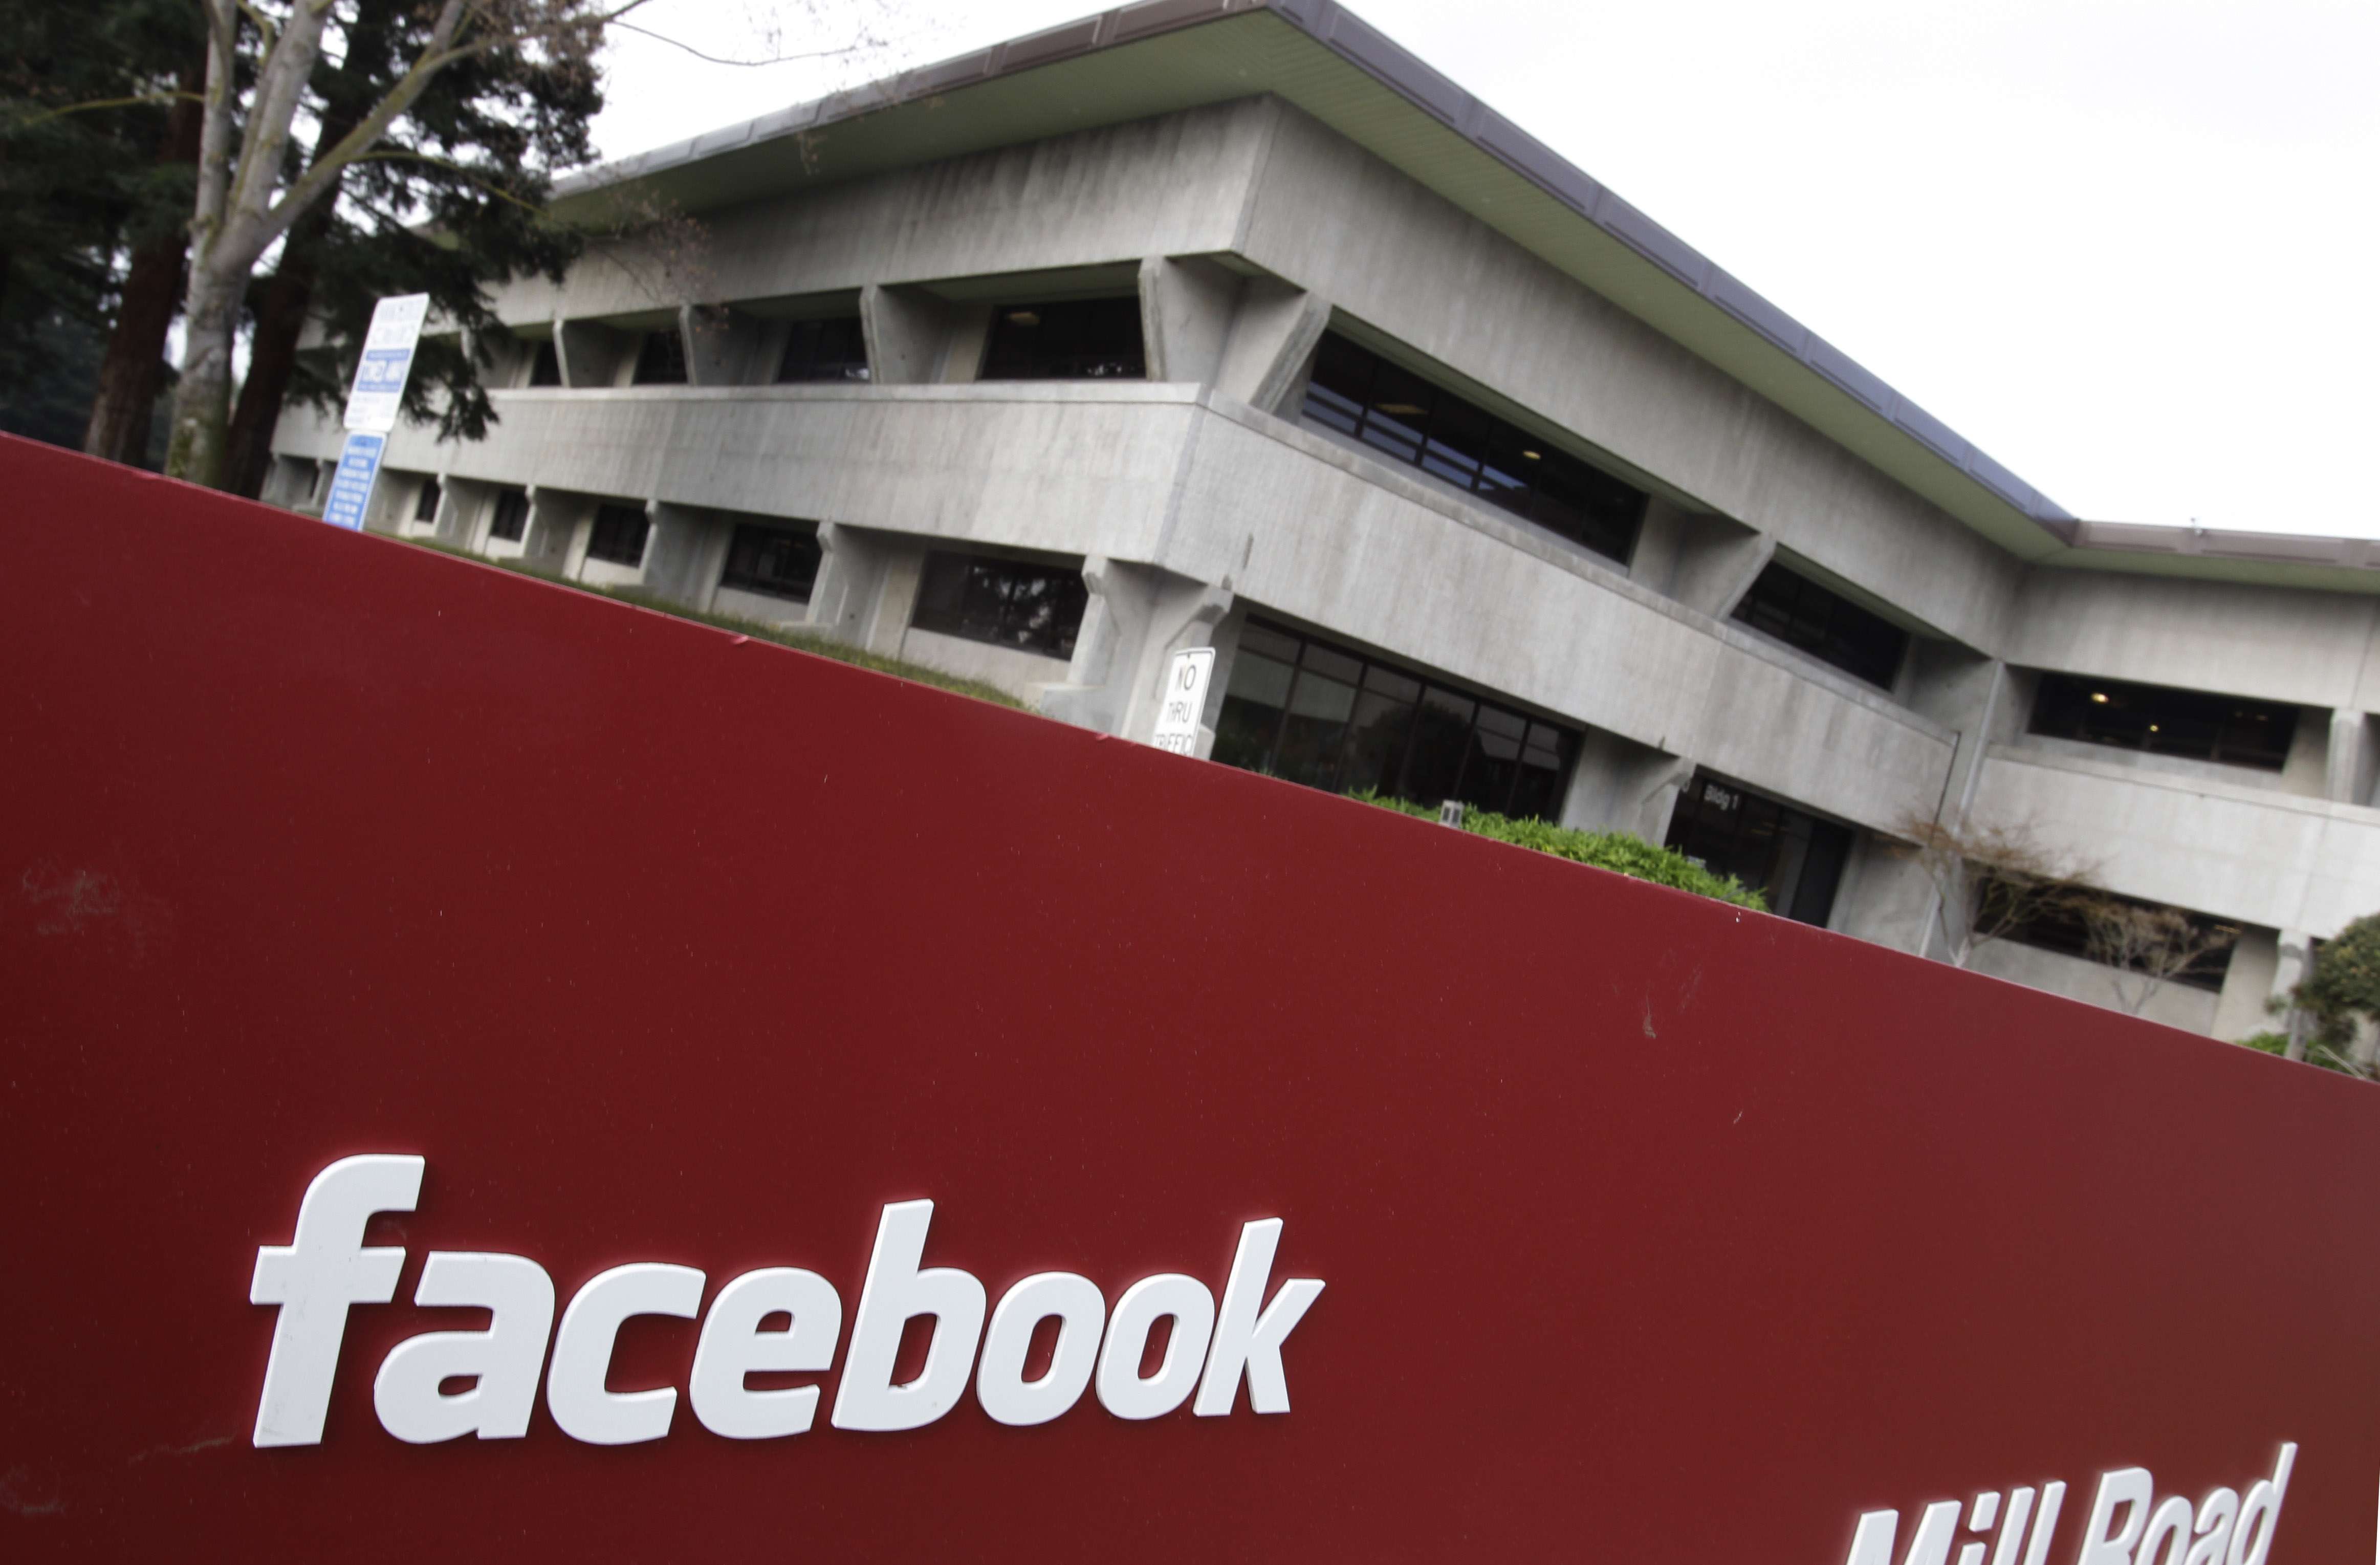 Facebook contrademanda a Yahoo y la acusa de "miope"